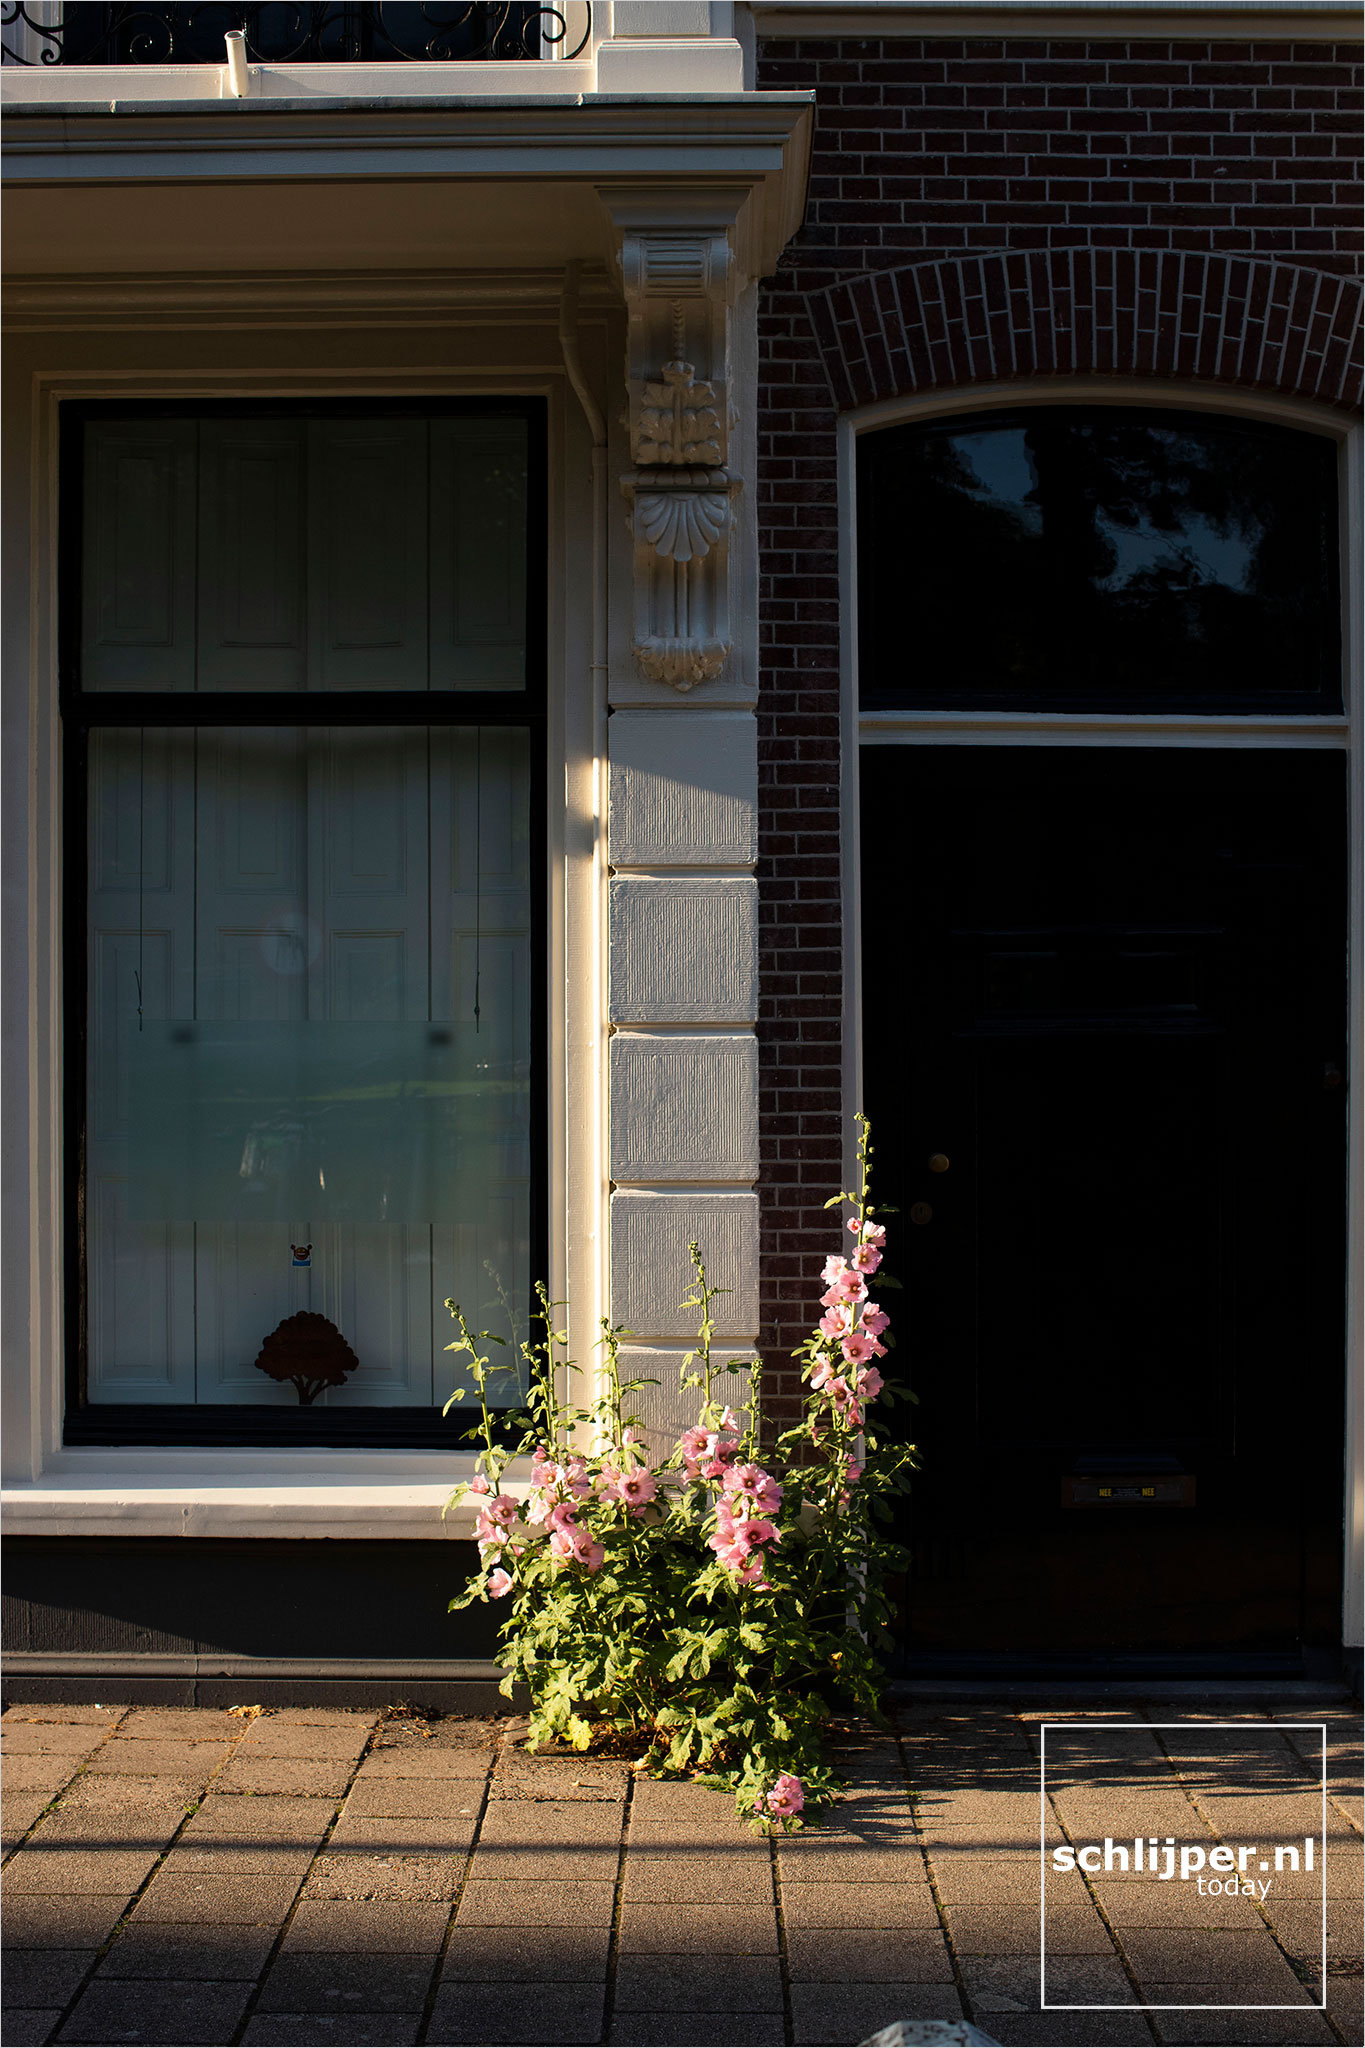 The Netherlands, Haarlem, 2 juli 2021